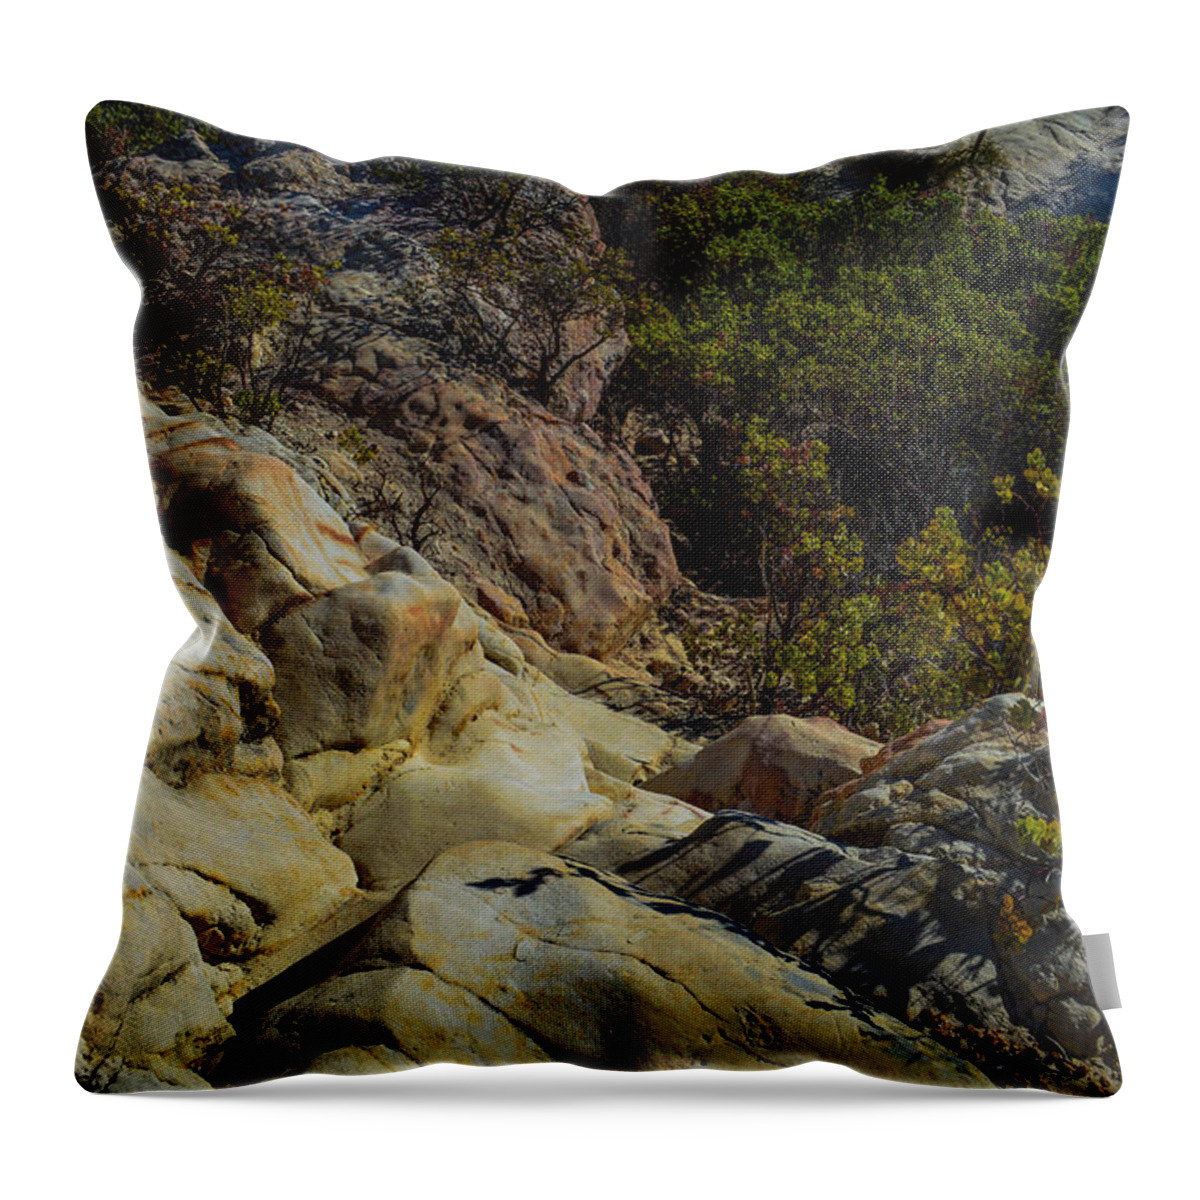 Rock Throw Pillow featuring the photograph Rock Climbing by Miranda Strapason